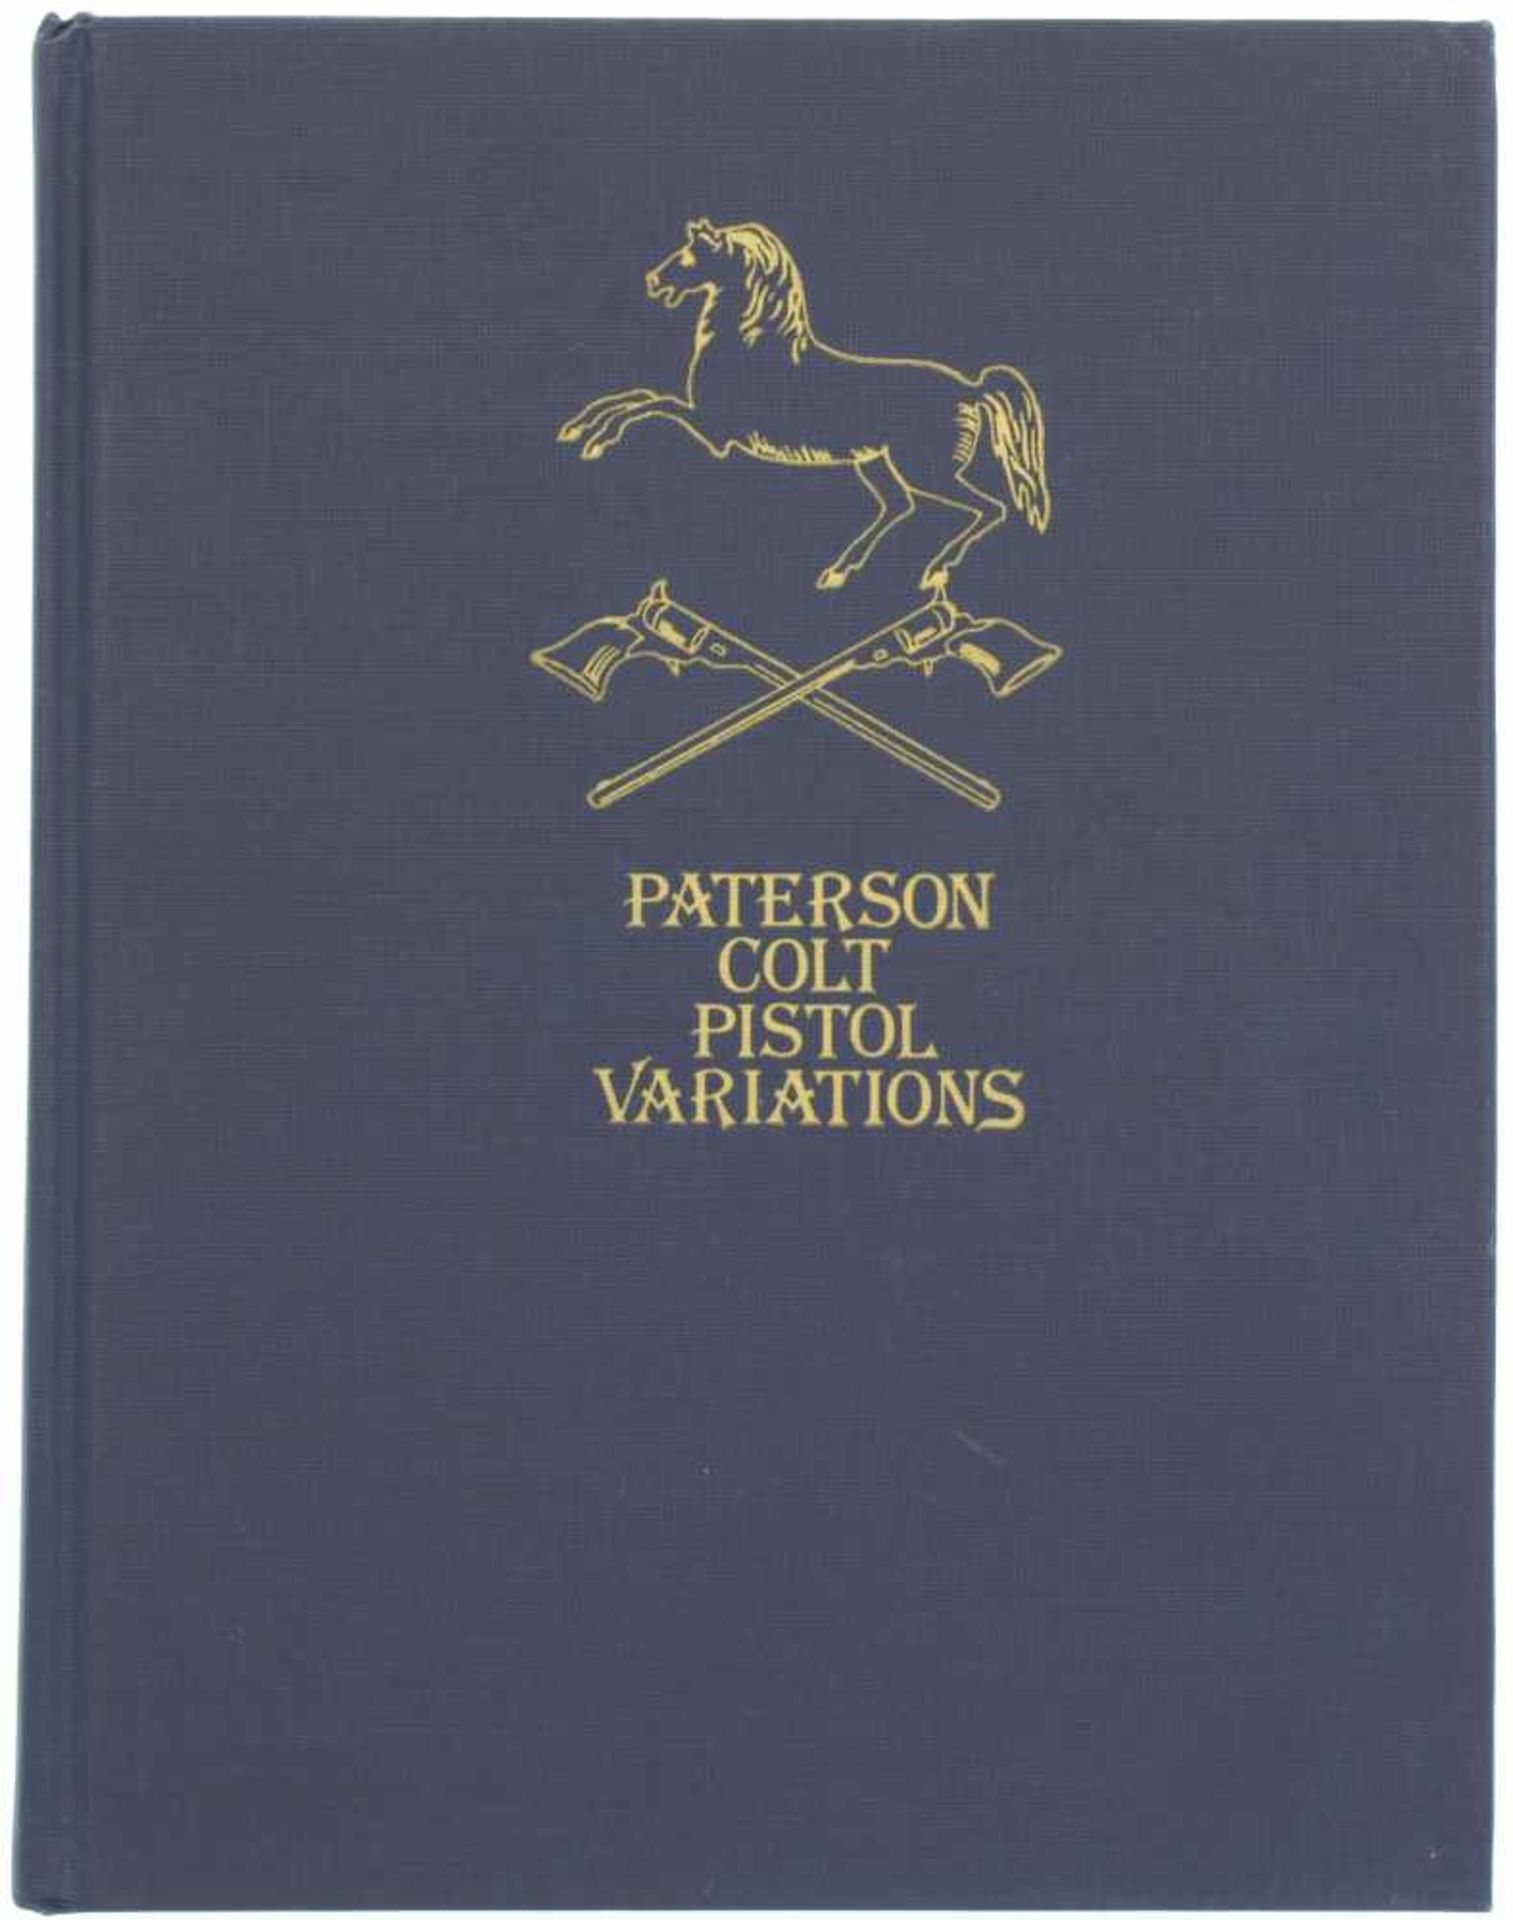 Paterson Colt Pistol Variations Autoren Philip R. Phillips und R.L. Wilson, 1979, 232 Seiten, in